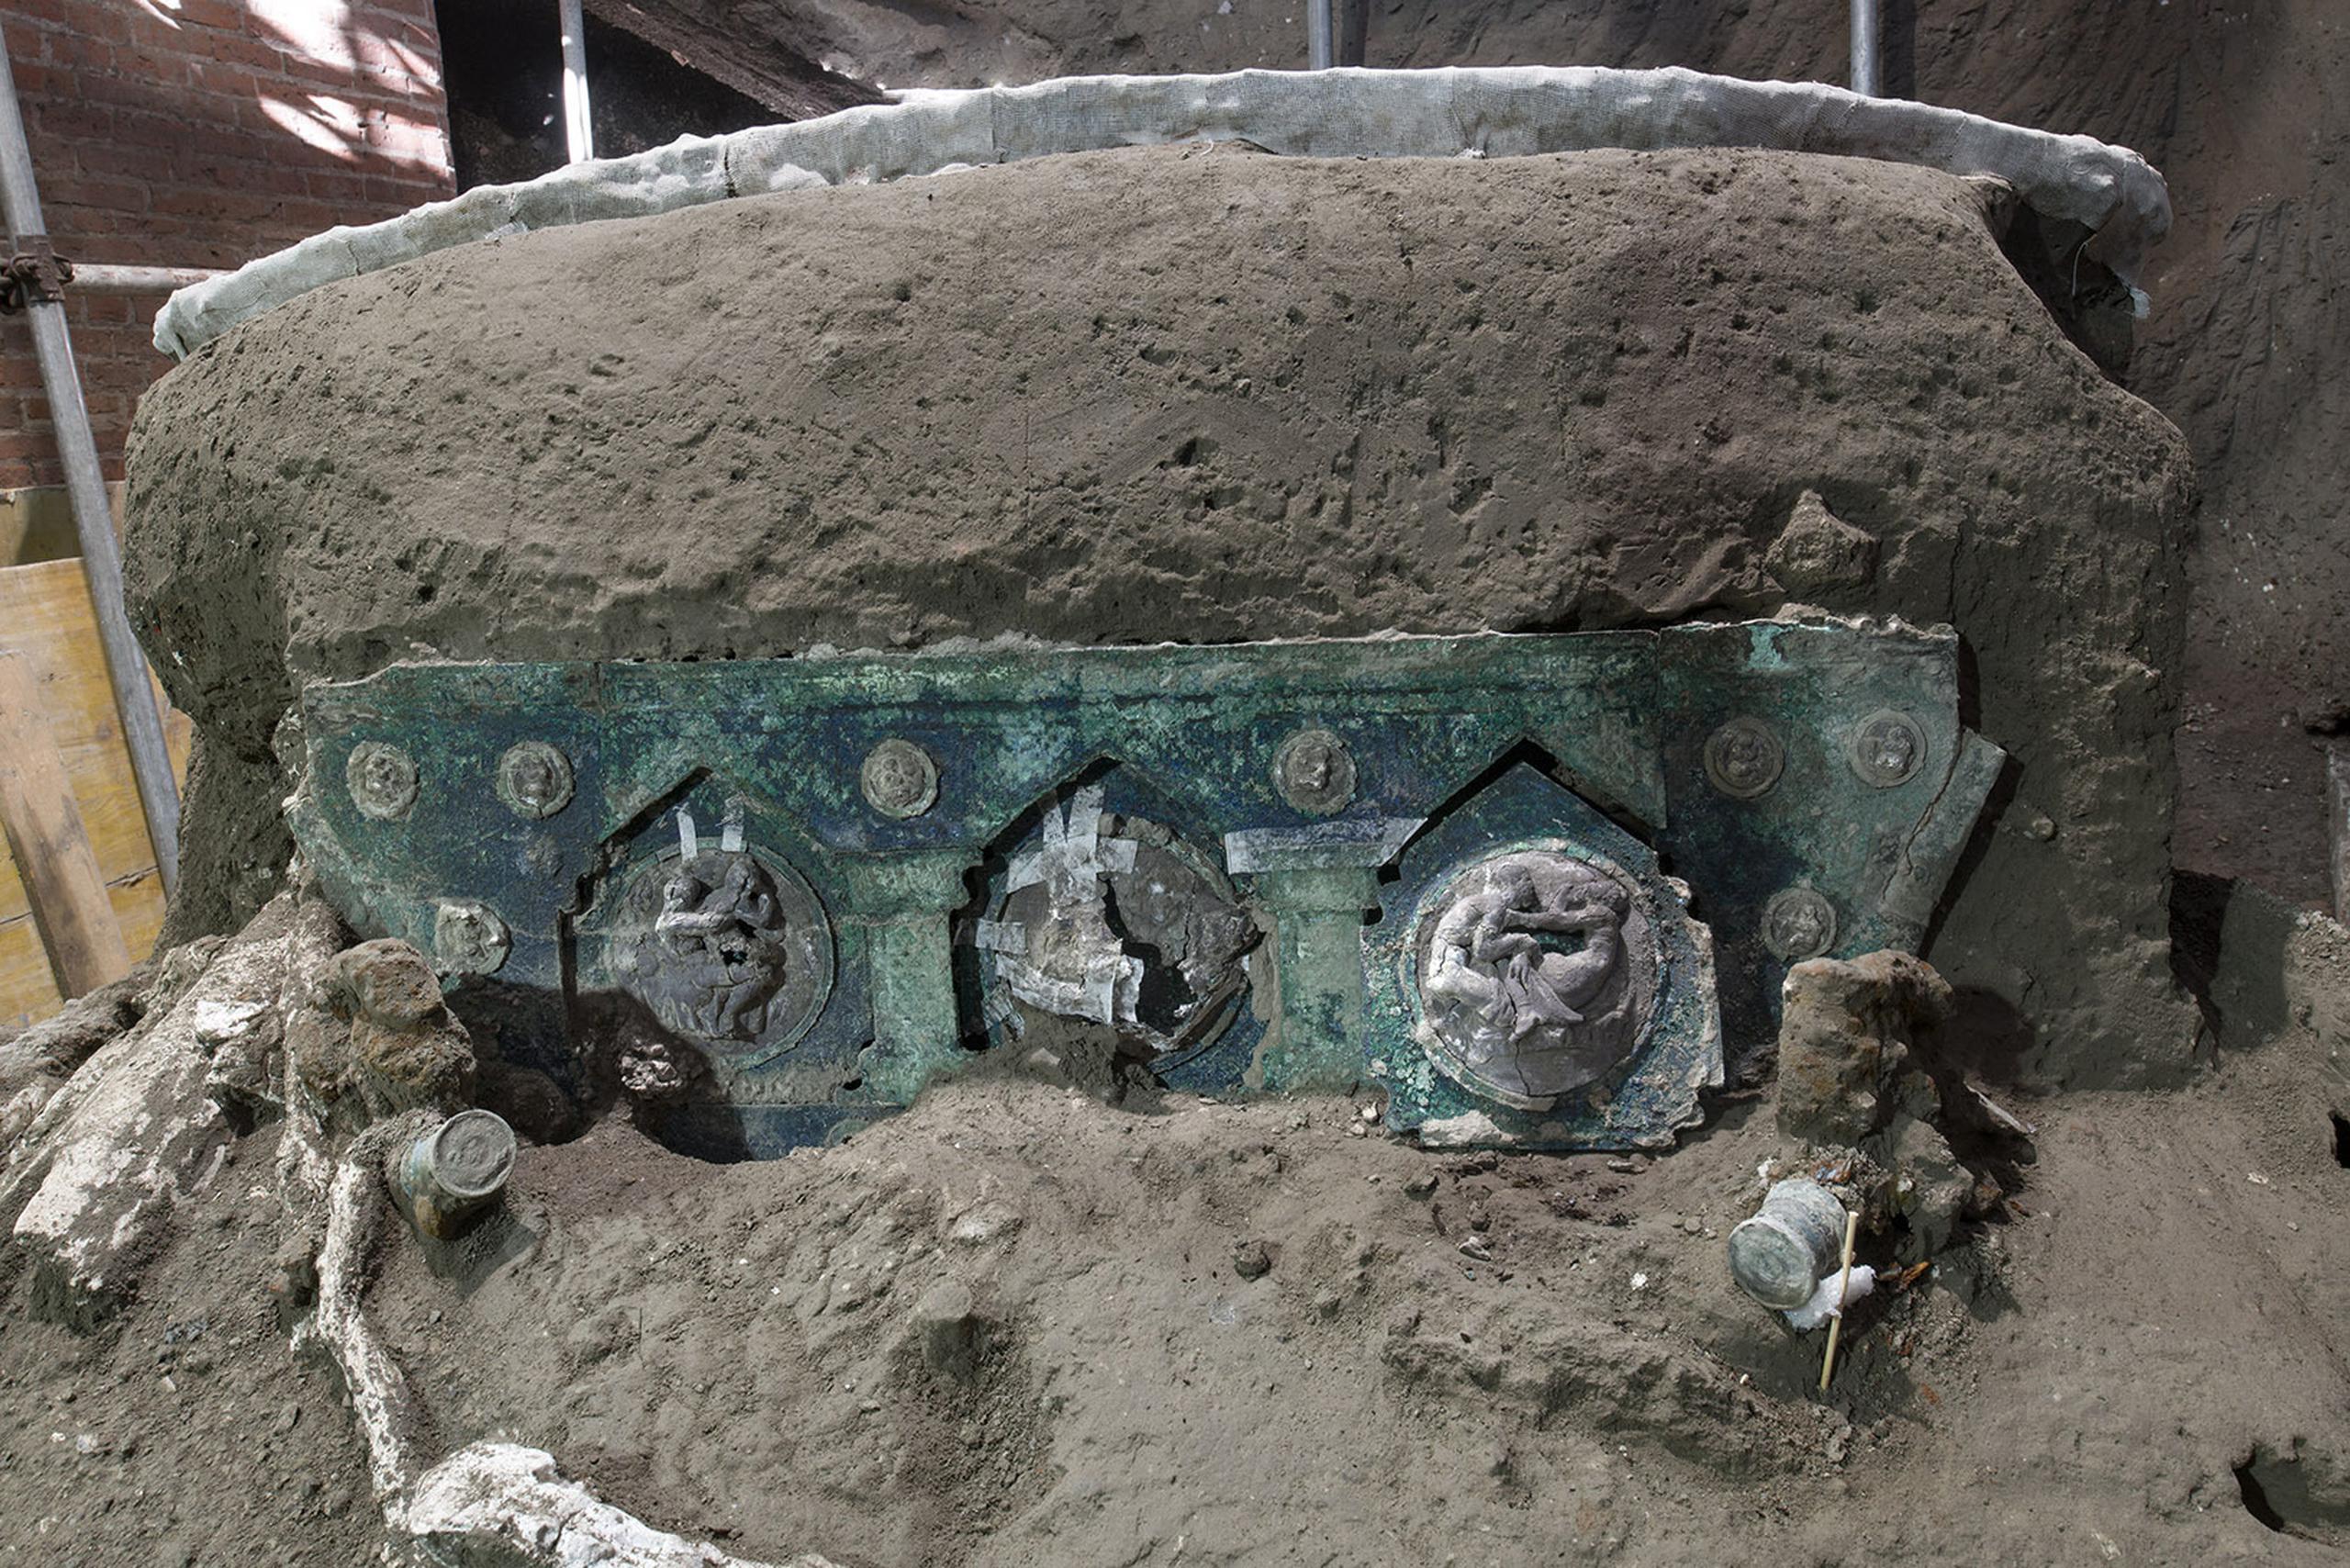 Vista de un carro con sus elementos de hierro, decoraciones de bronce y restos de madera mineralizada hallado en Civita Giuliana, al norte de Pompeya.